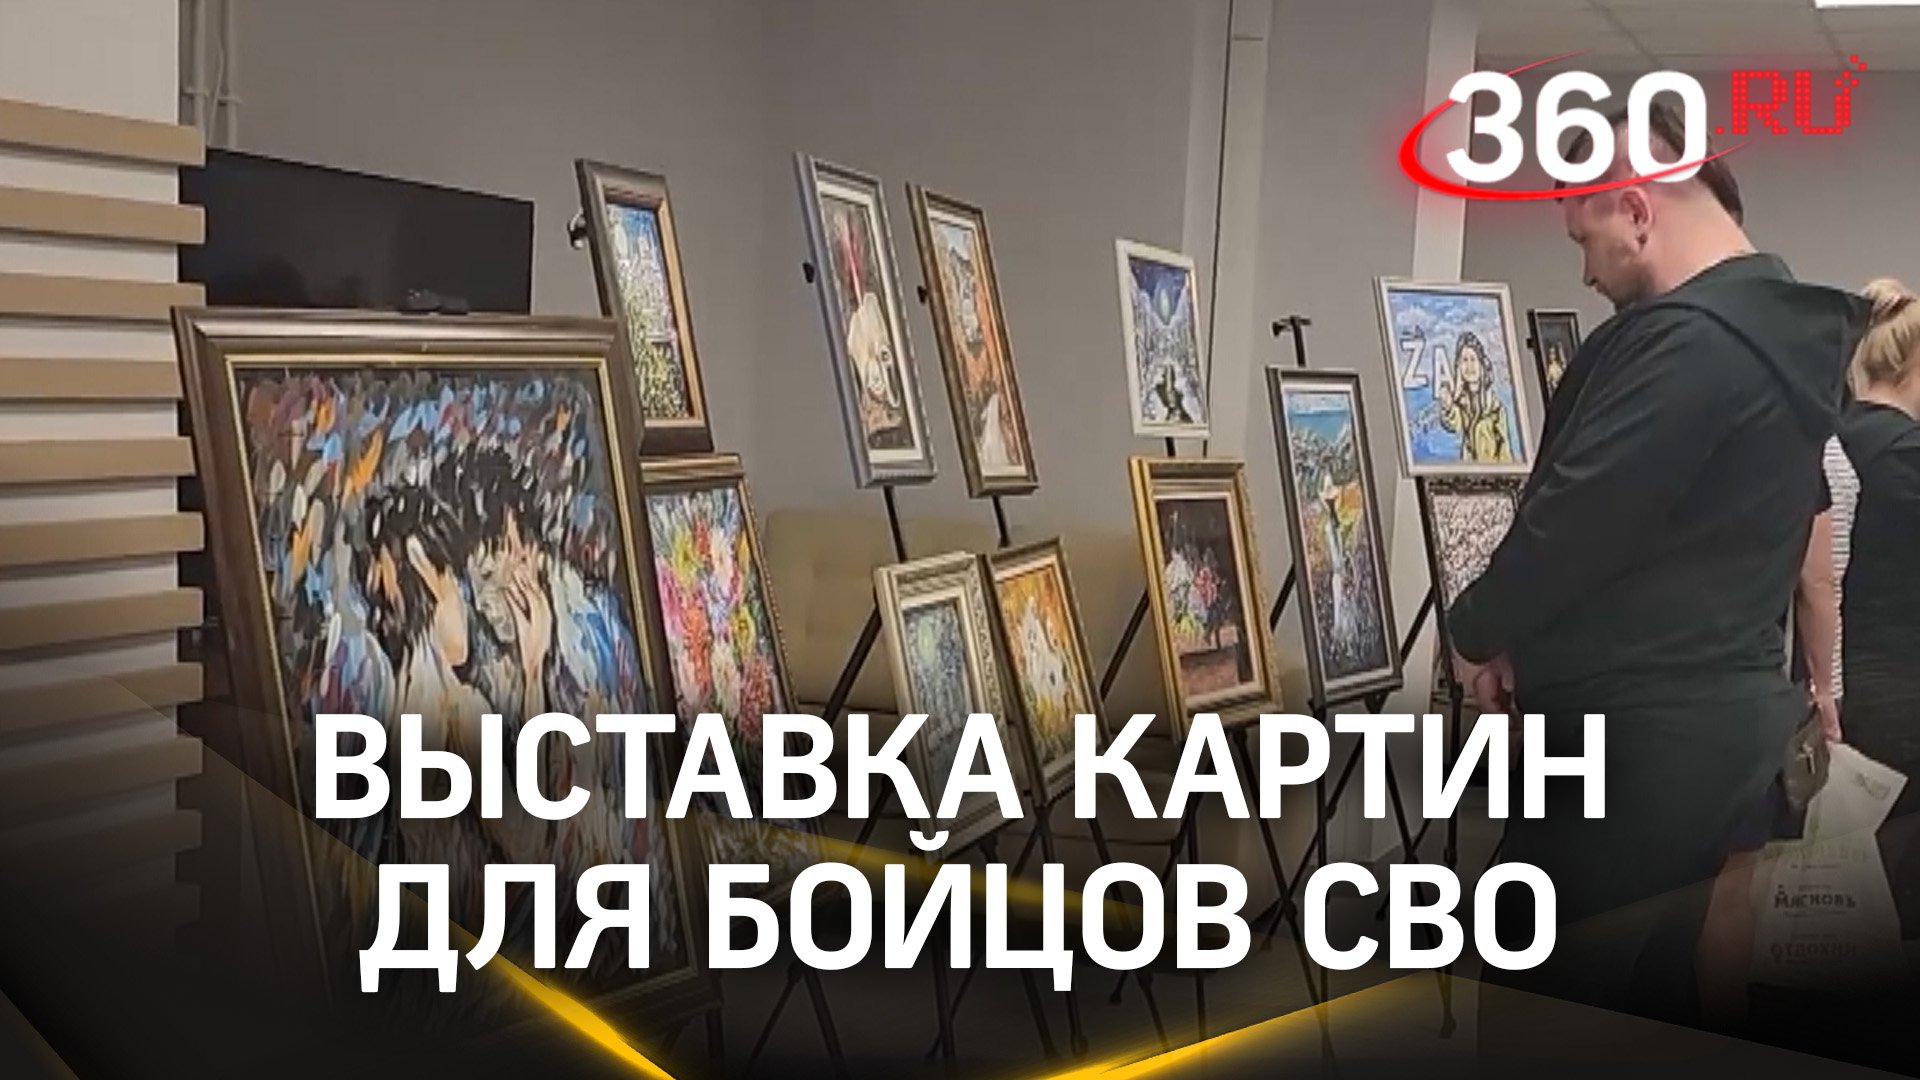 Ветеранам СВО в “Ясенки” привезли выставку картин